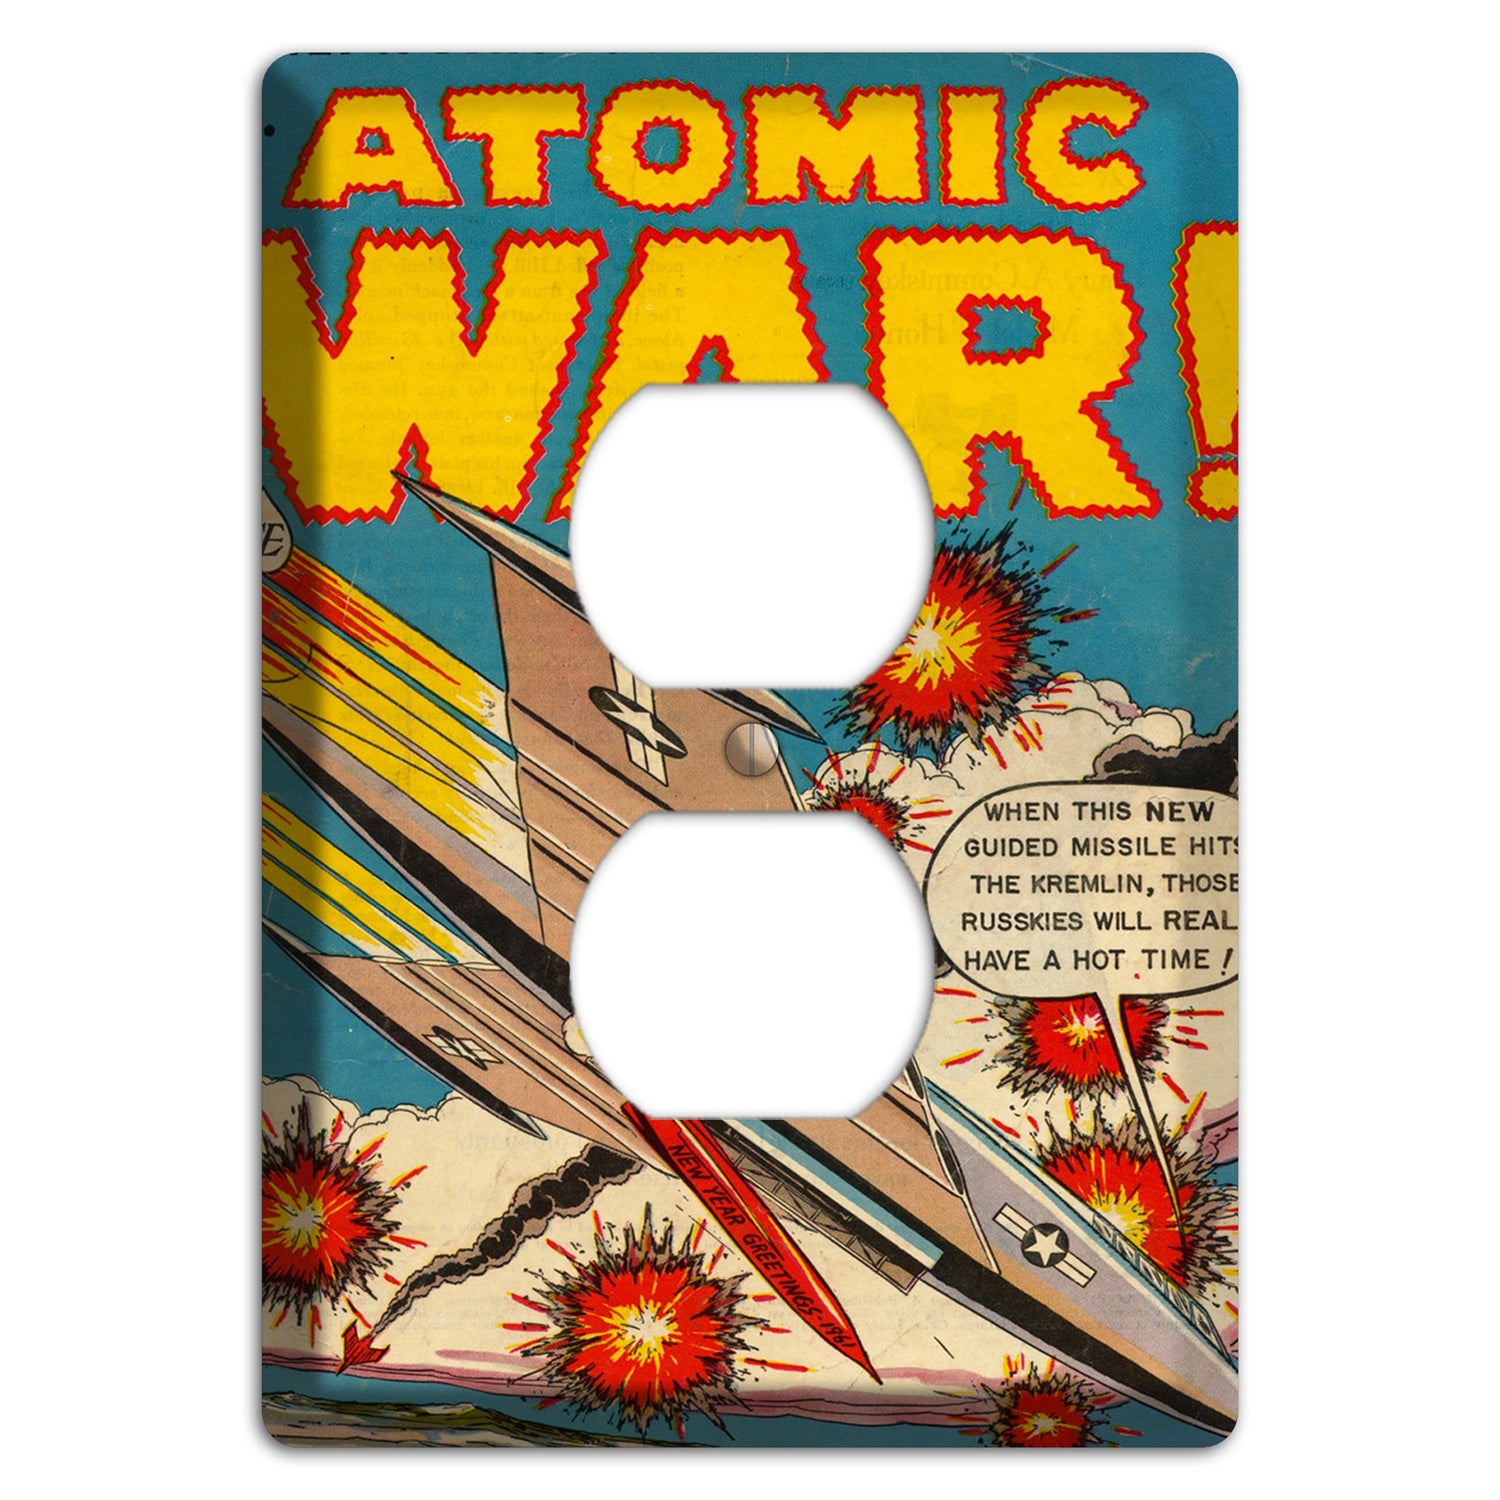 Atomic War 2 Vintage Comics Duplex Outlet Wallplate